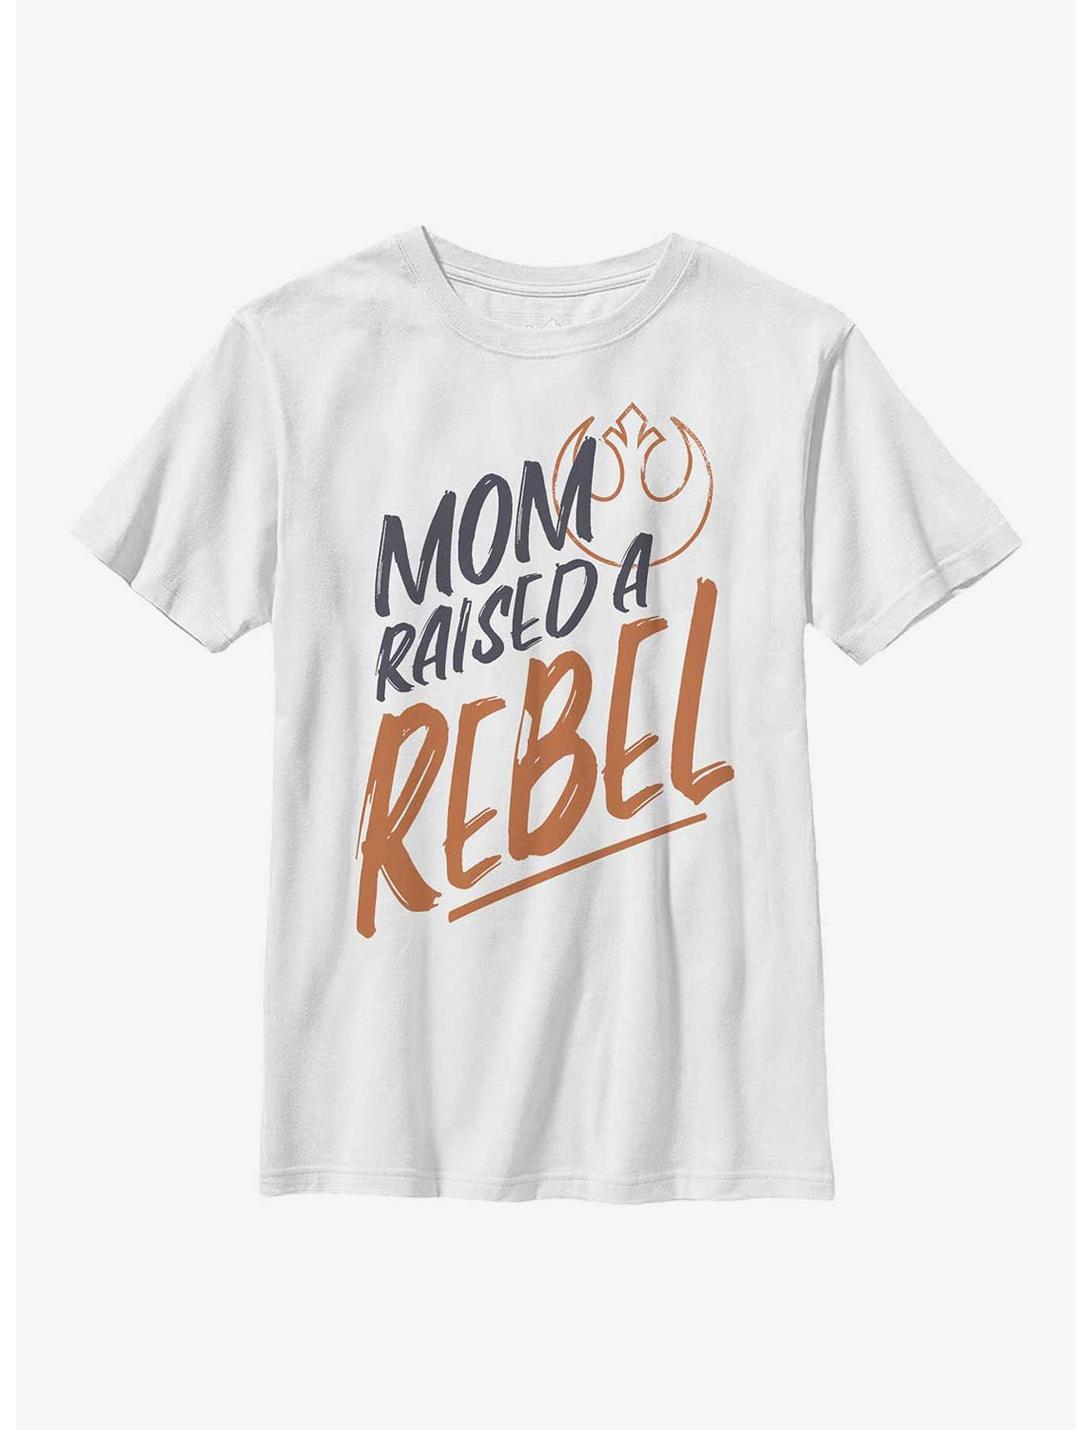 Star Wars Rebel Kid Youth T-Shirt, WHITE, hi-res